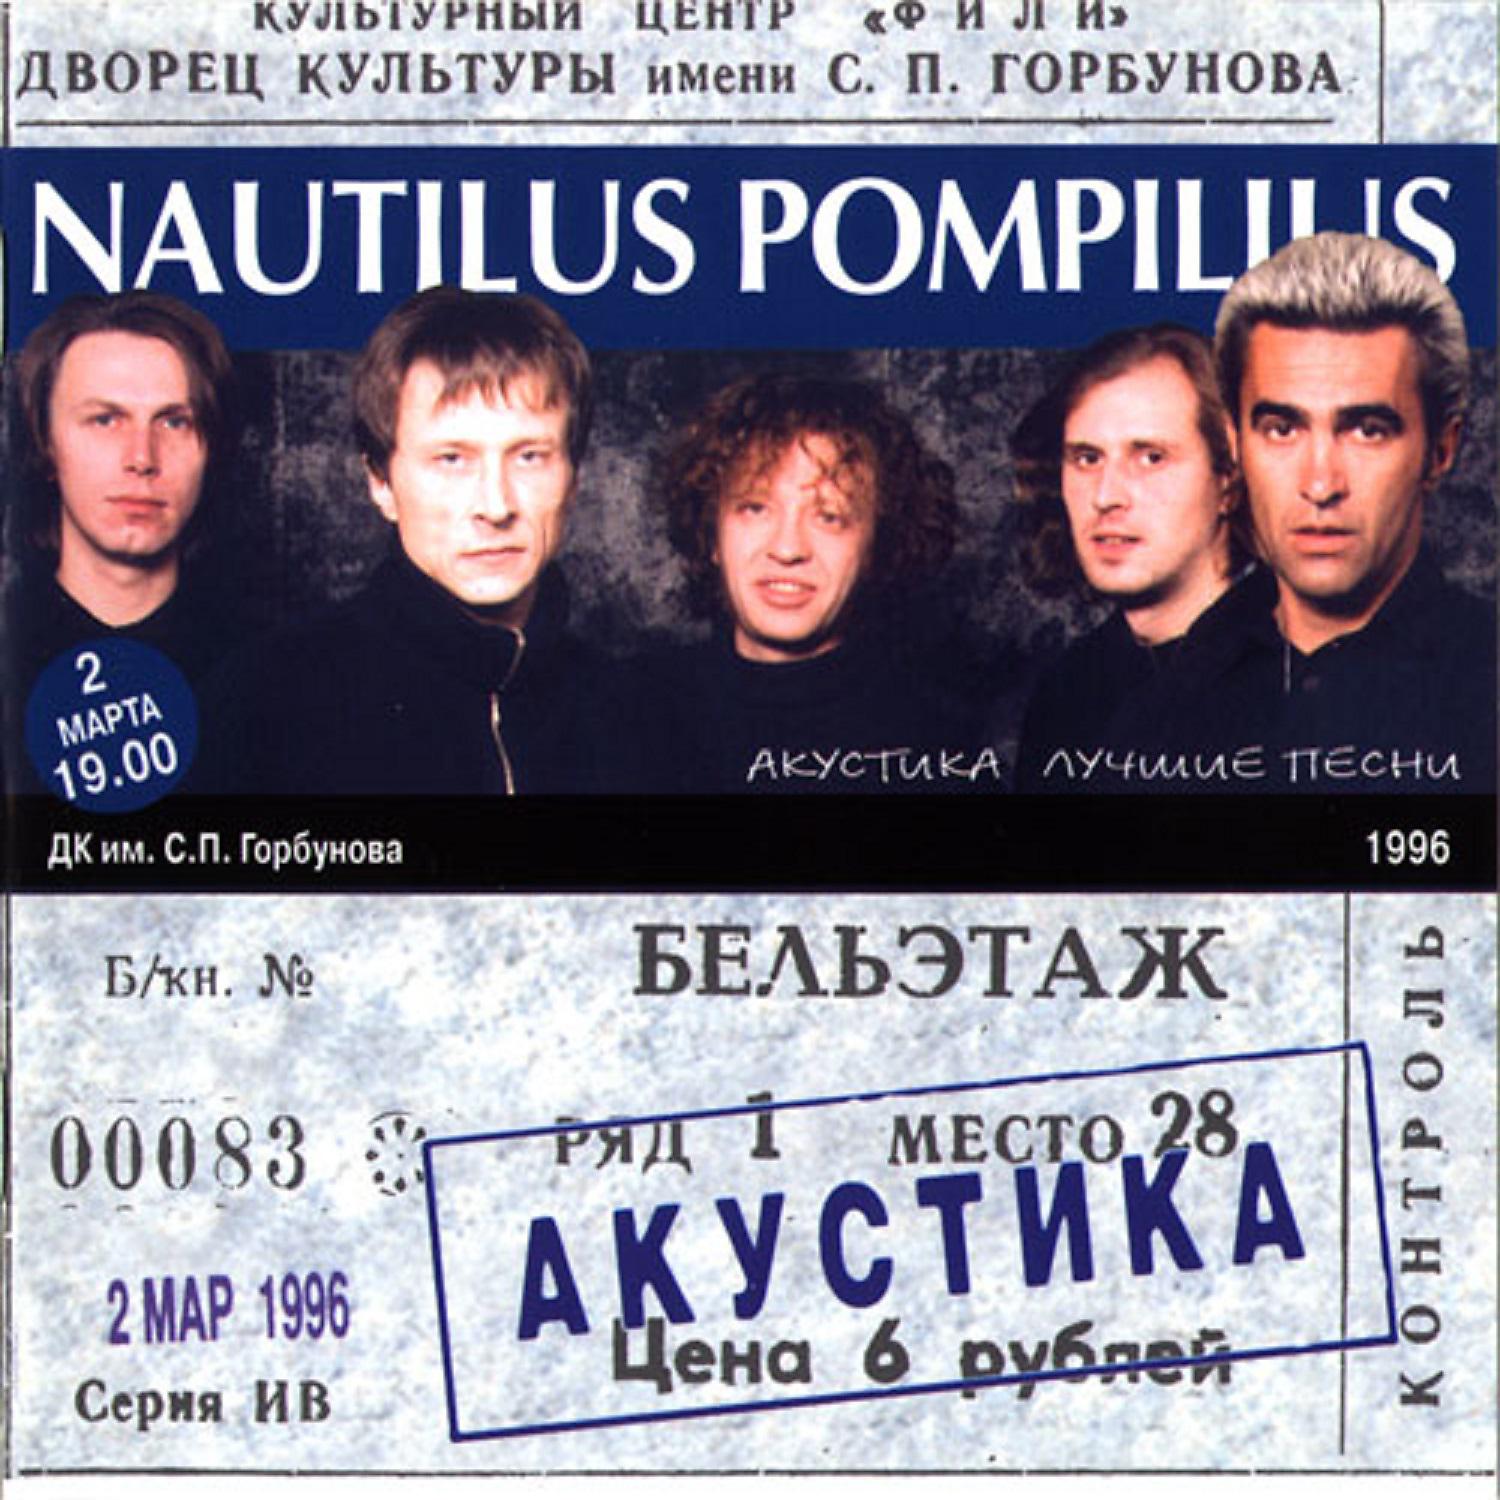 Концерт Наутилус Помпилиус 1996. Наутилус акустика 1996. Наутилус Помпилиус - концерт ДК Горбунова (акустика 1996). Концерт Наутилус Помпилиус акустика 1996.